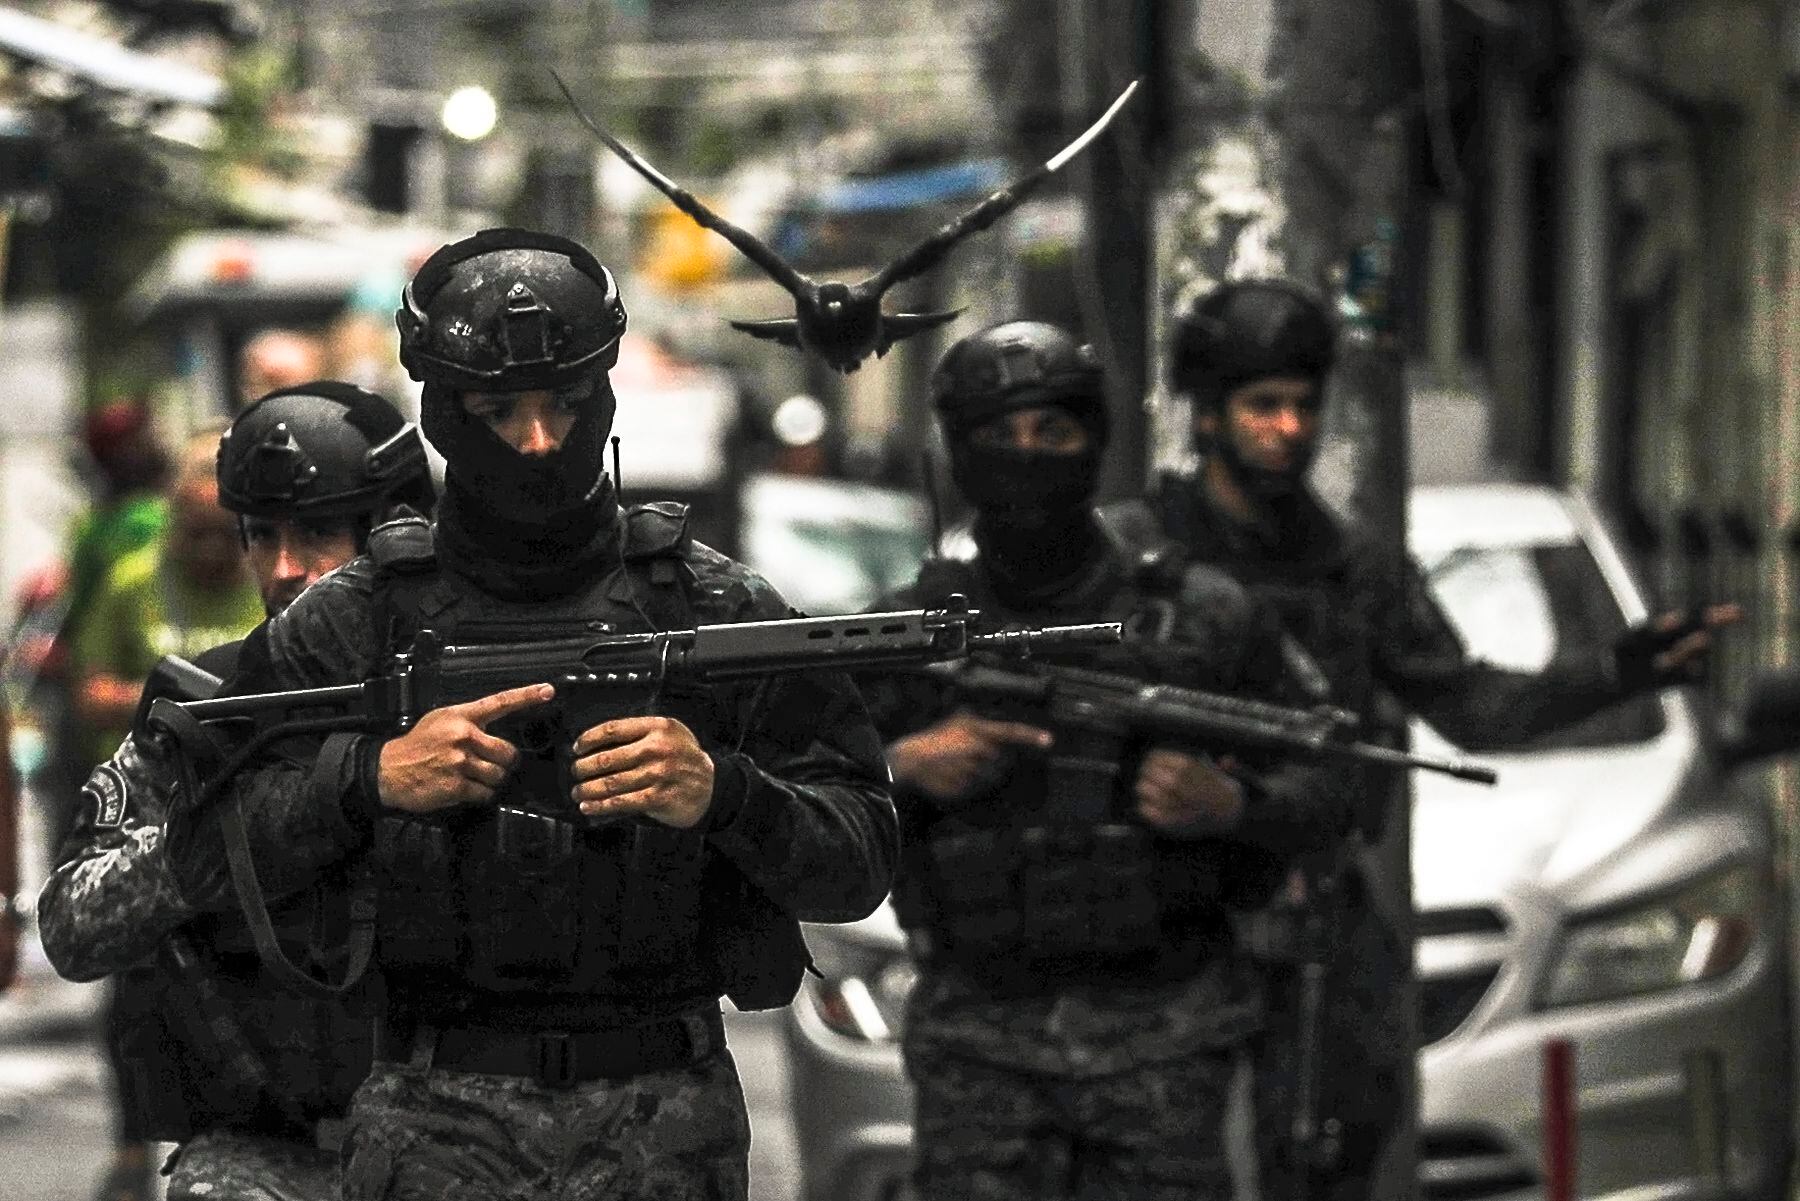 Un grupo de policías fue registrado durante un operativo contra las bandas criminales, en la Favela de Maré, en la zona norte de la ciudad de Río de Janeiro (Brasil). EFE/Antonio Lacerda